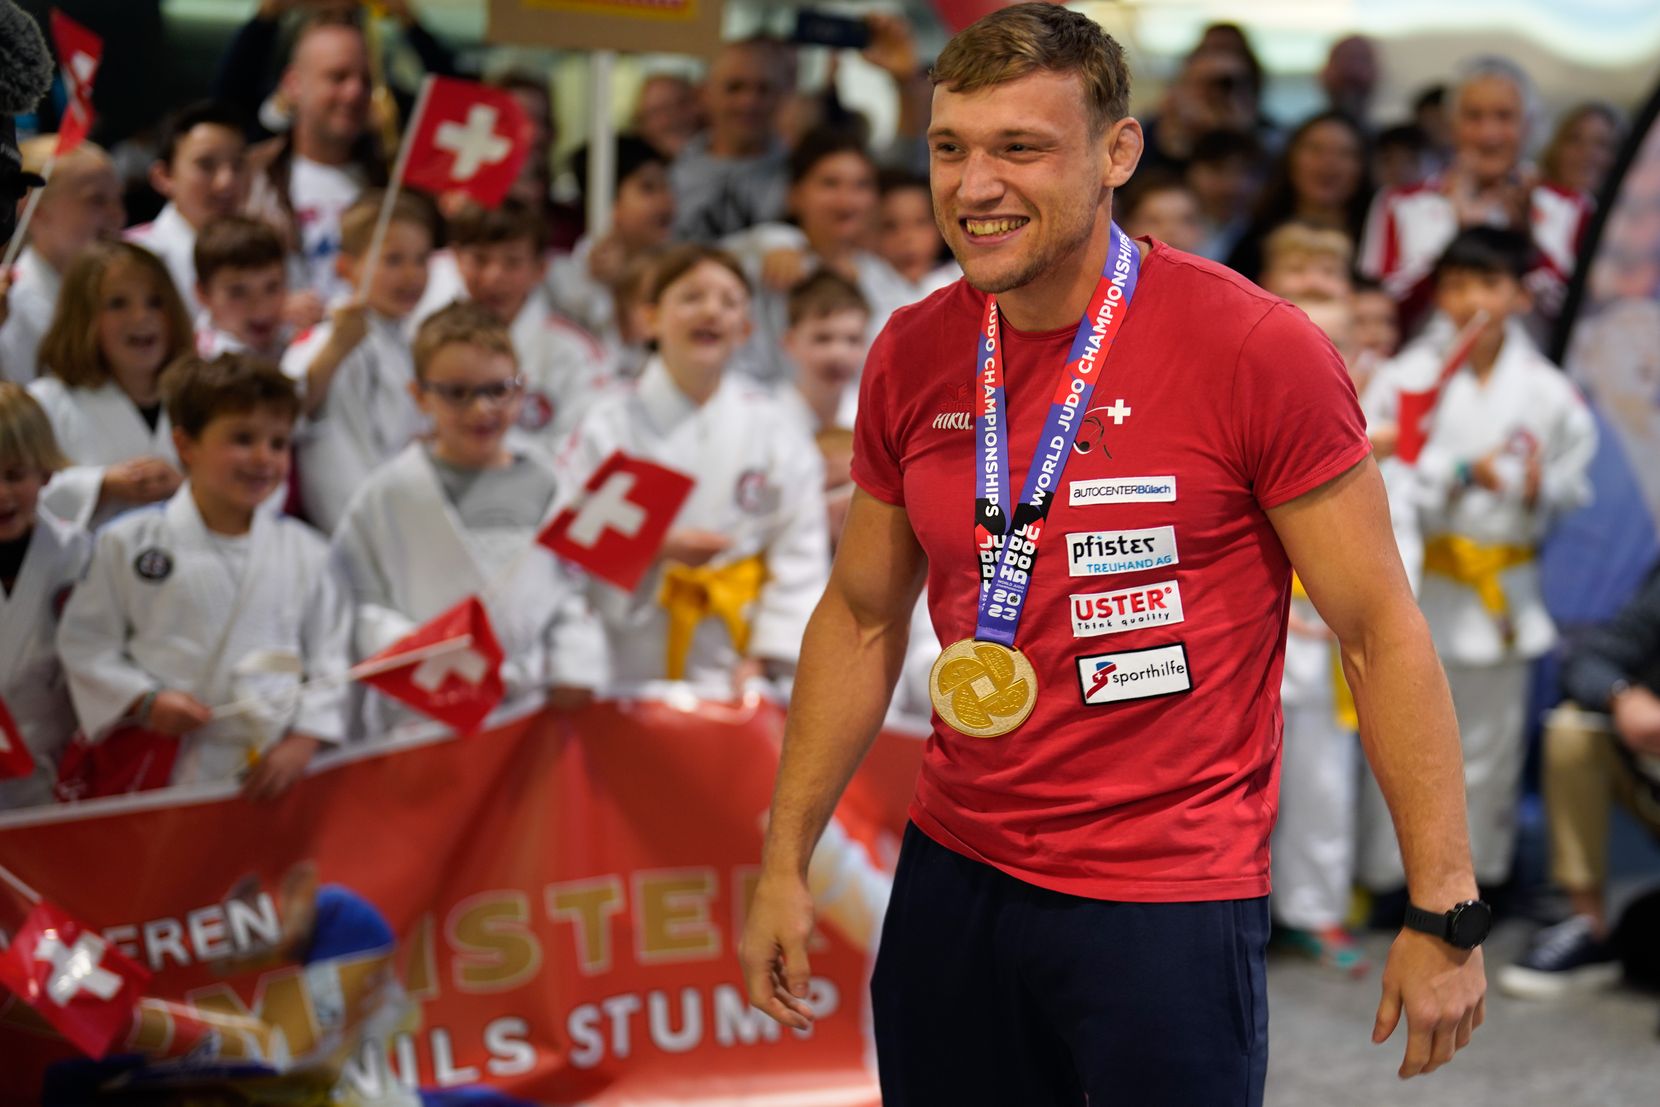 Empfang des Judo-Weltmeisters Nils Stump am Flughafen Zürich